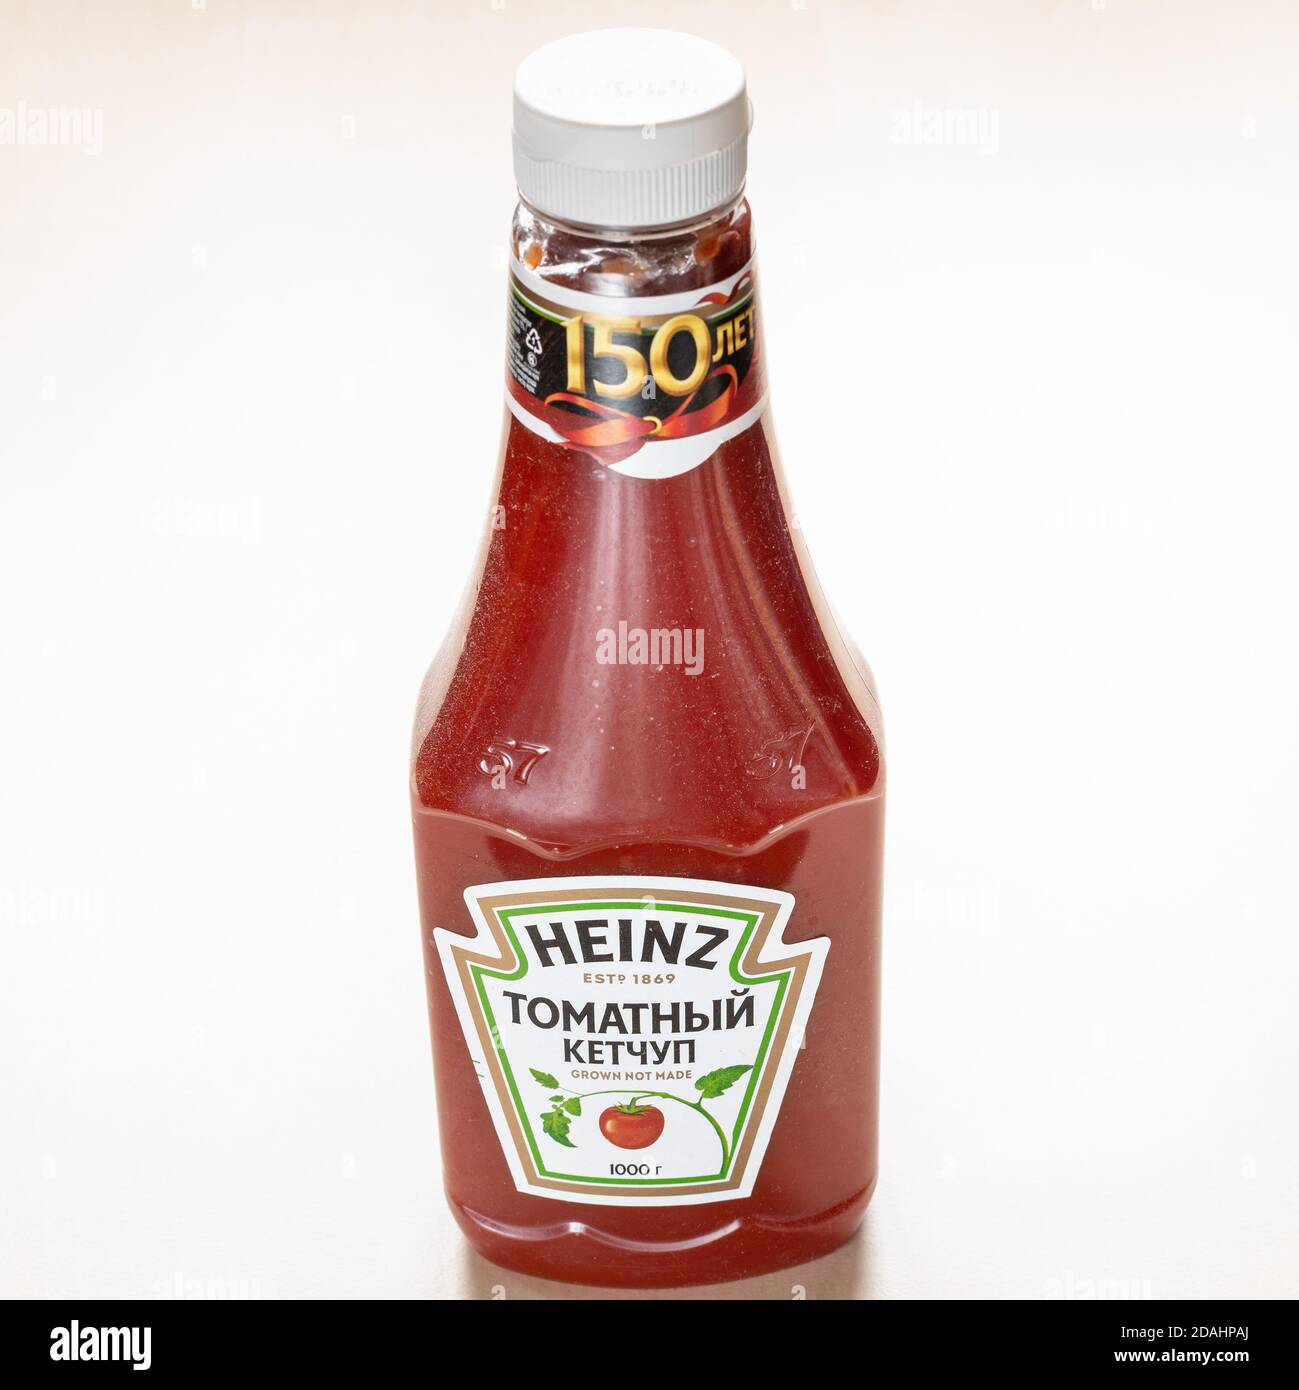 MOSCOU, RUSSIE - 4 NOVEMBRE 2020: russe 150e anniversaire de l'édition bouteille de ketchup Heinz Tomato sur un tableau brun clair. Les produits de ketchup de Heinz à la tomate Banque D'Images